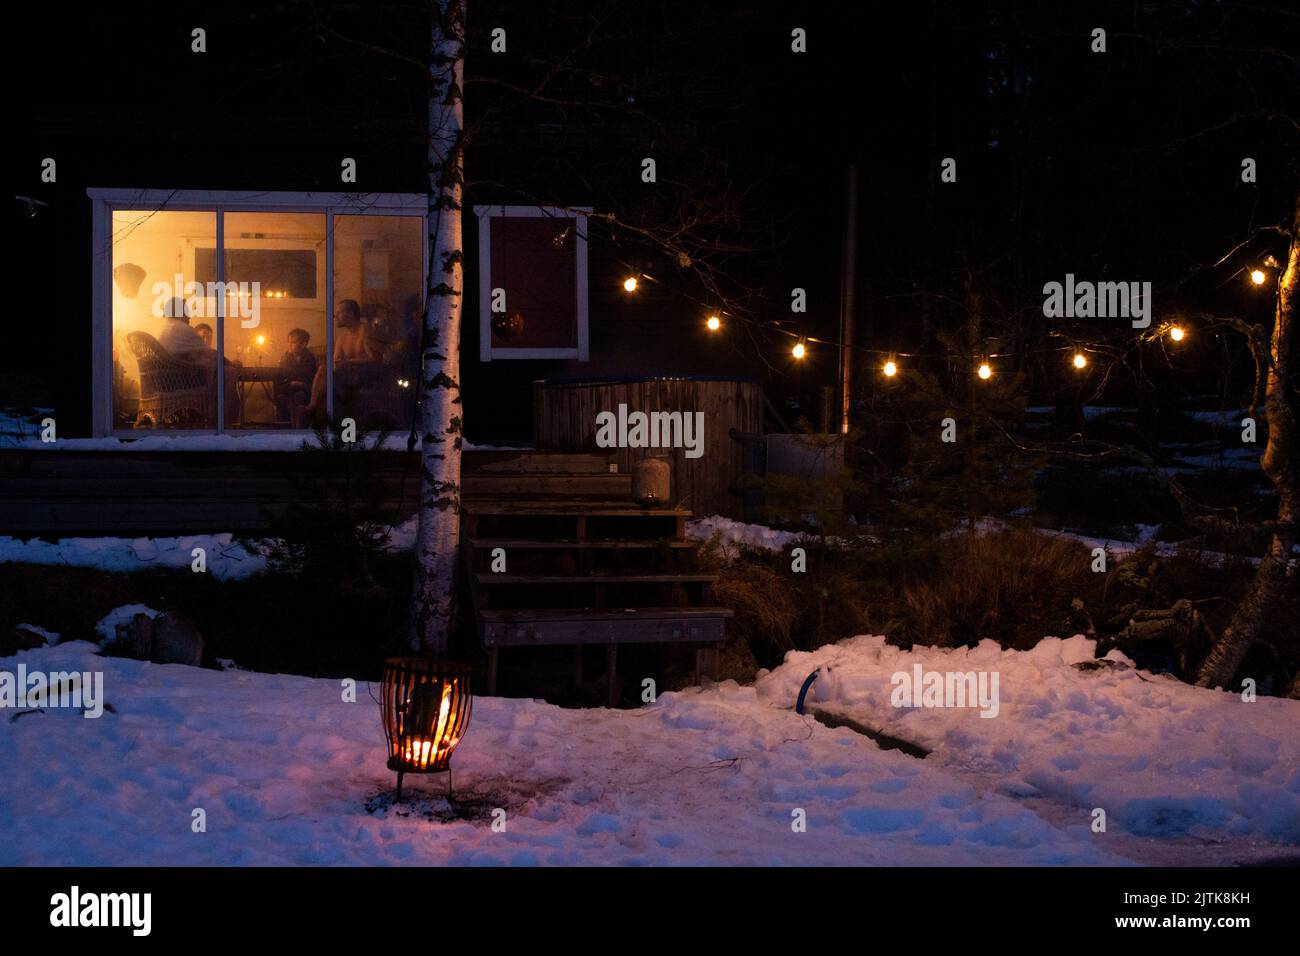 Uomini maturi con figli visti attraverso la finestra di casa illuminata in inverno di notte Foto Stock